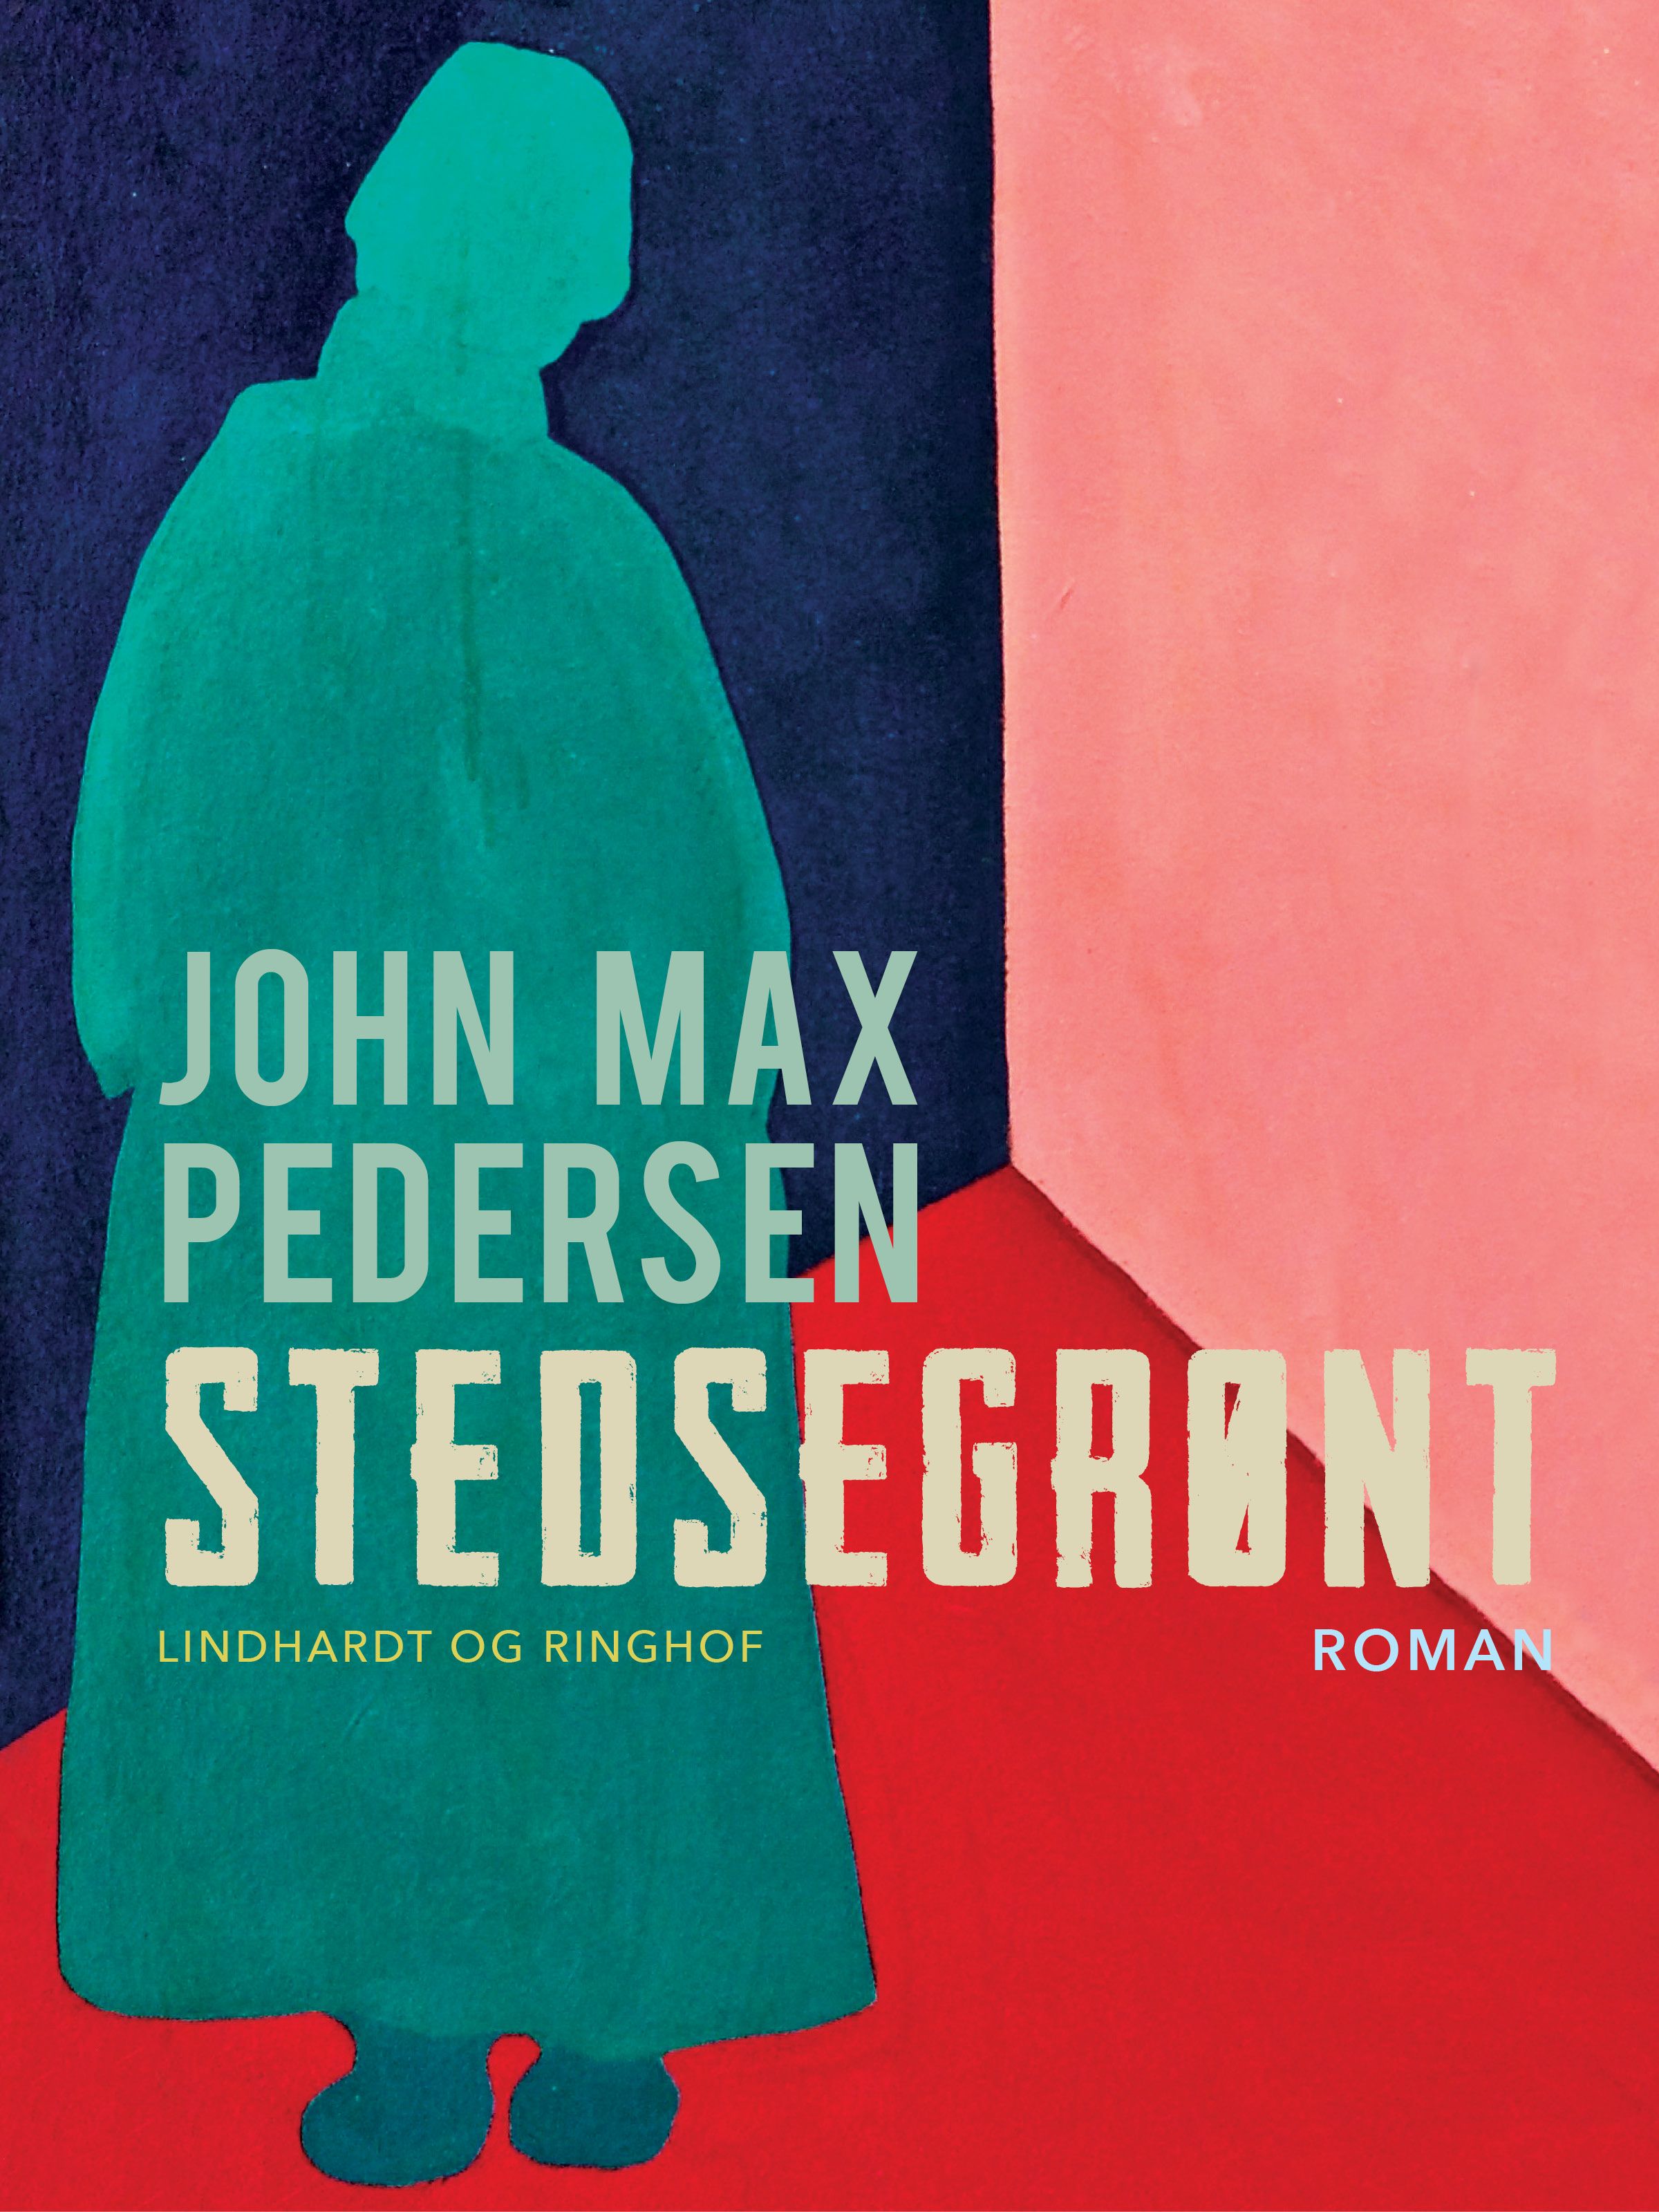 Stedsegrønt, e-bok av John Max Pedersen